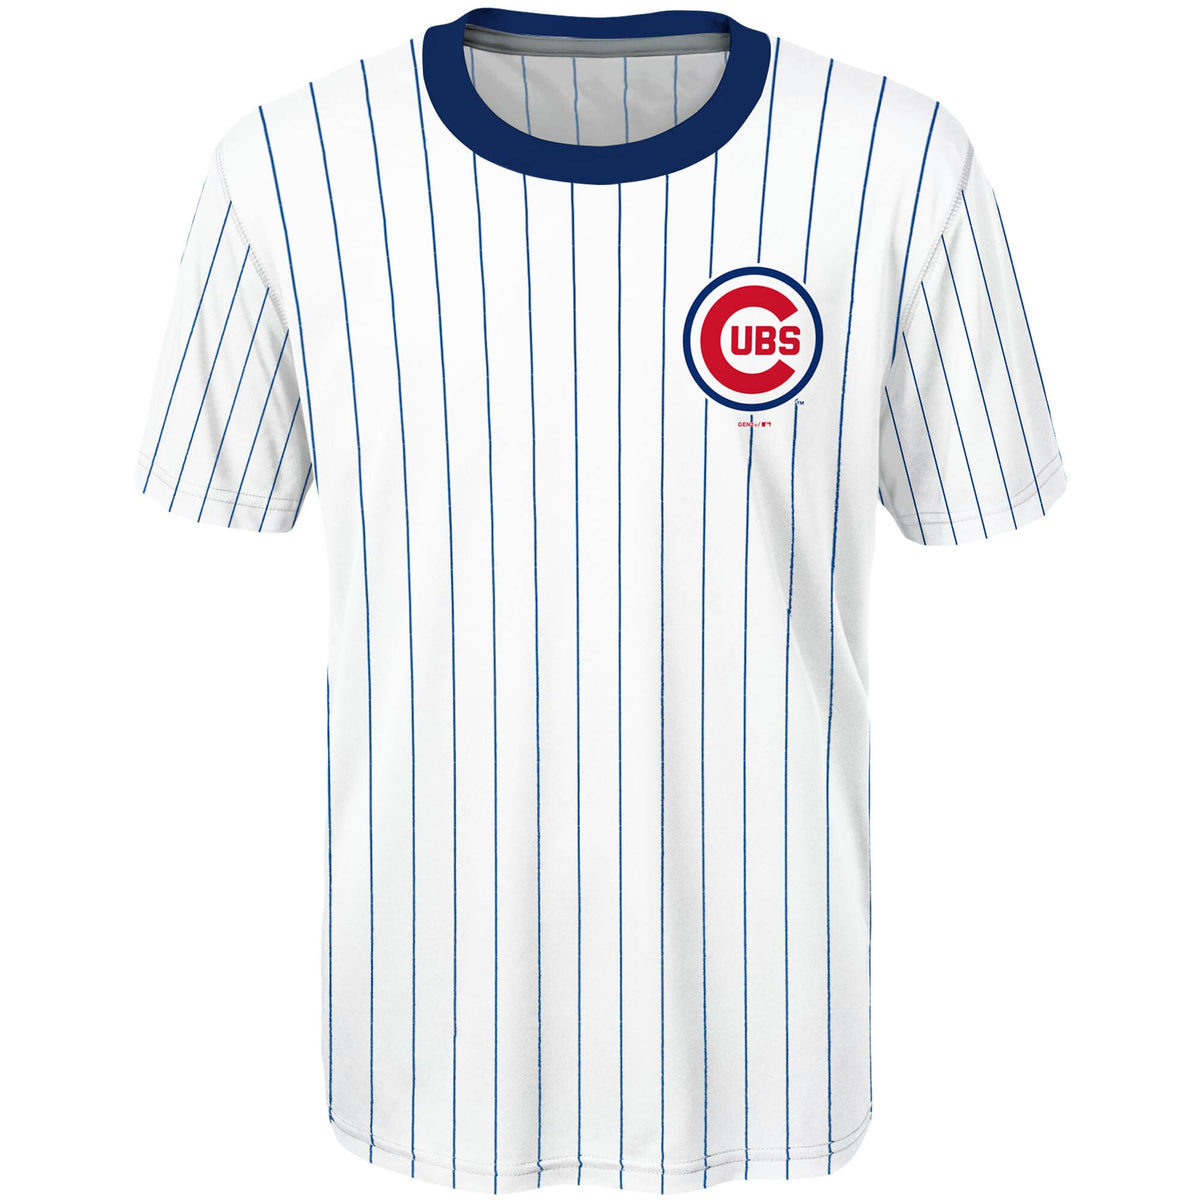 Chicago Cubs Digital Camo Kris Bryant Jersey T Shirt Men's Size XL